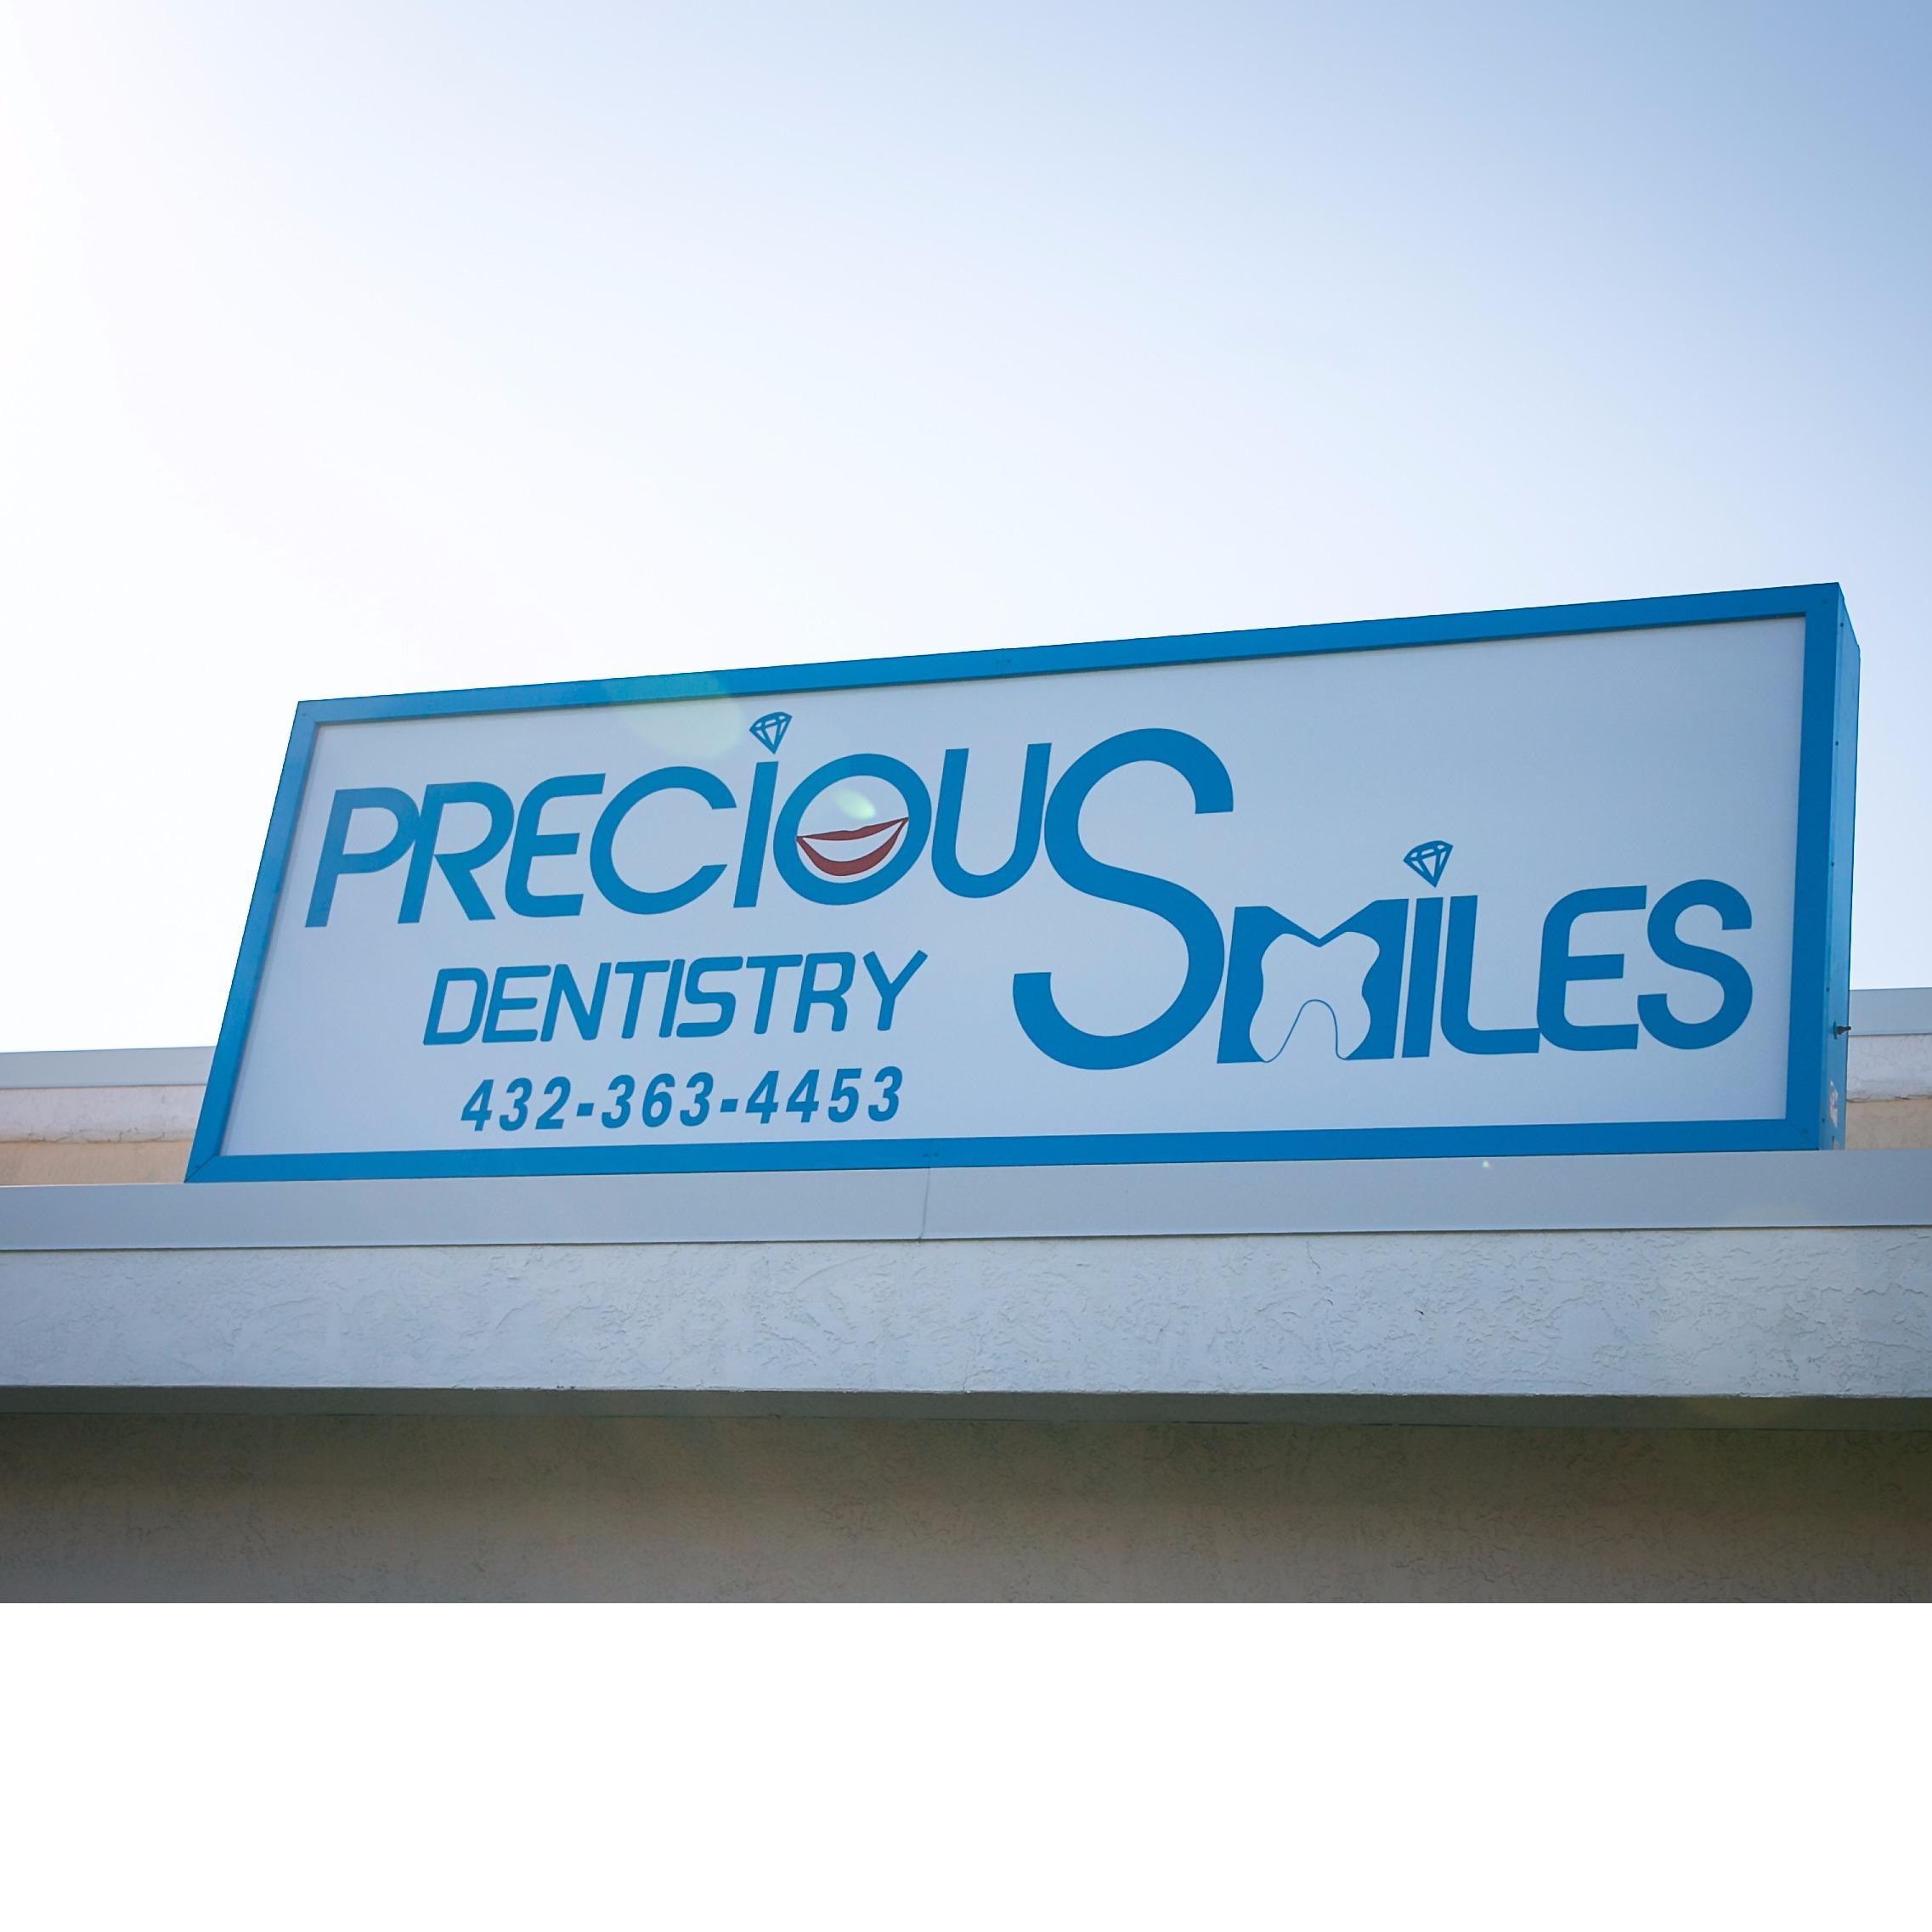 Precious Smiles Dentistry - Odessa, TX 79762 - (432)363-4453 | ShowMeLocal.com